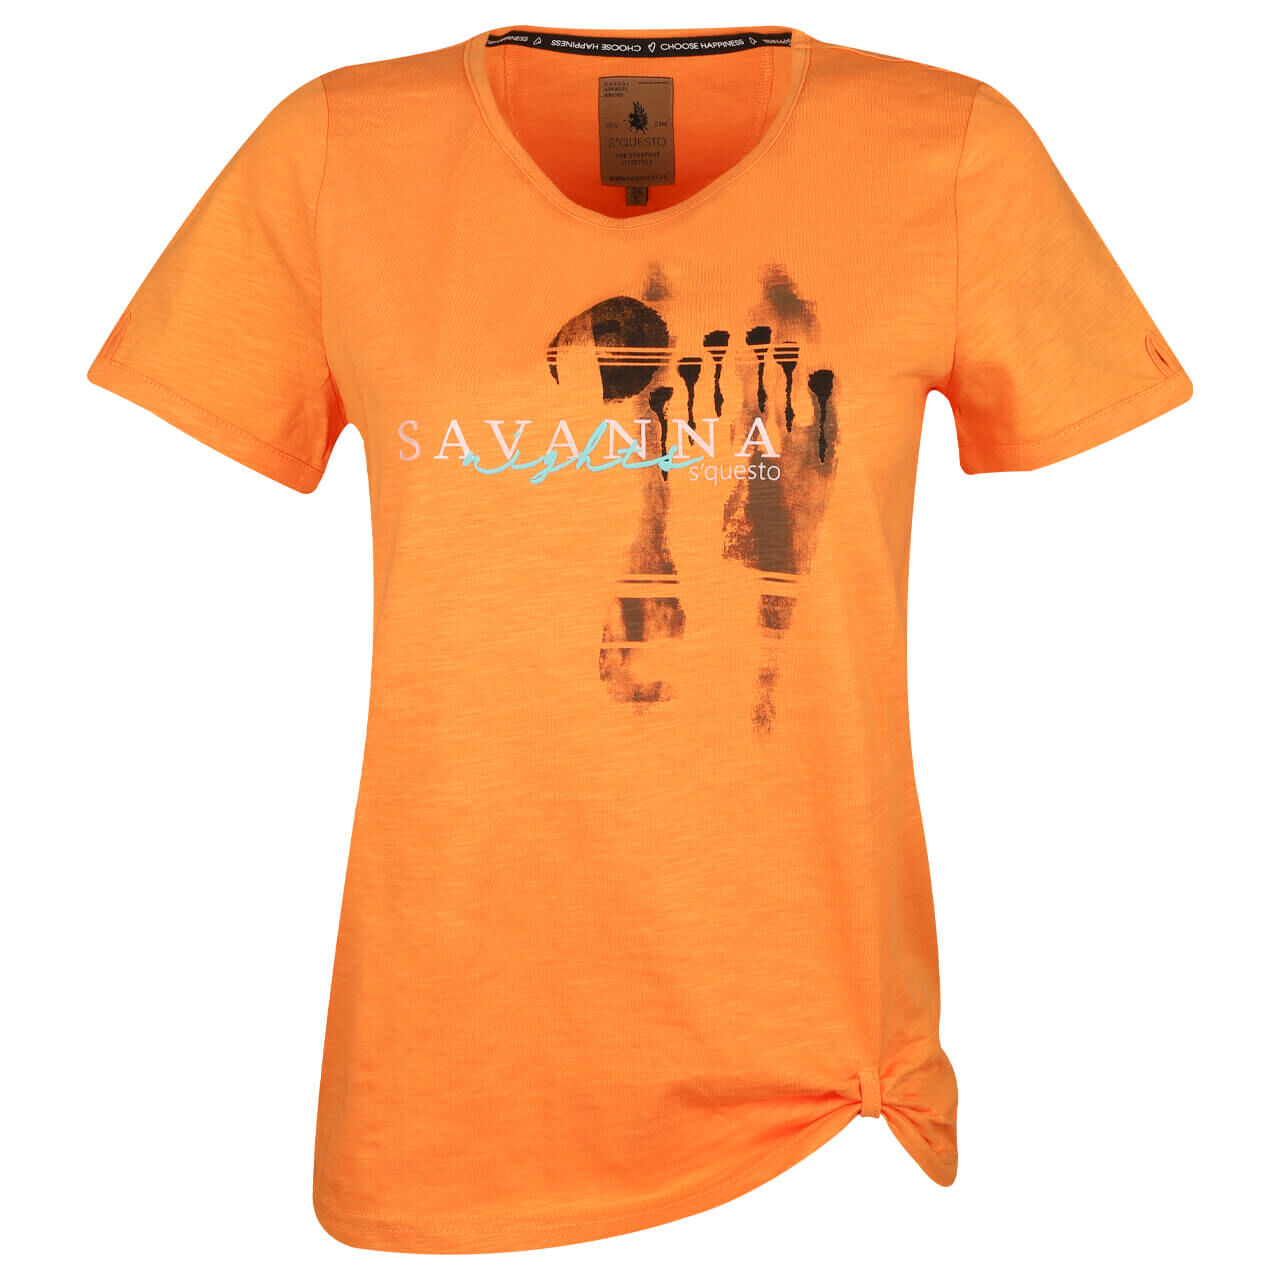 Soquesto Damen T-Shirt savanna nectarine